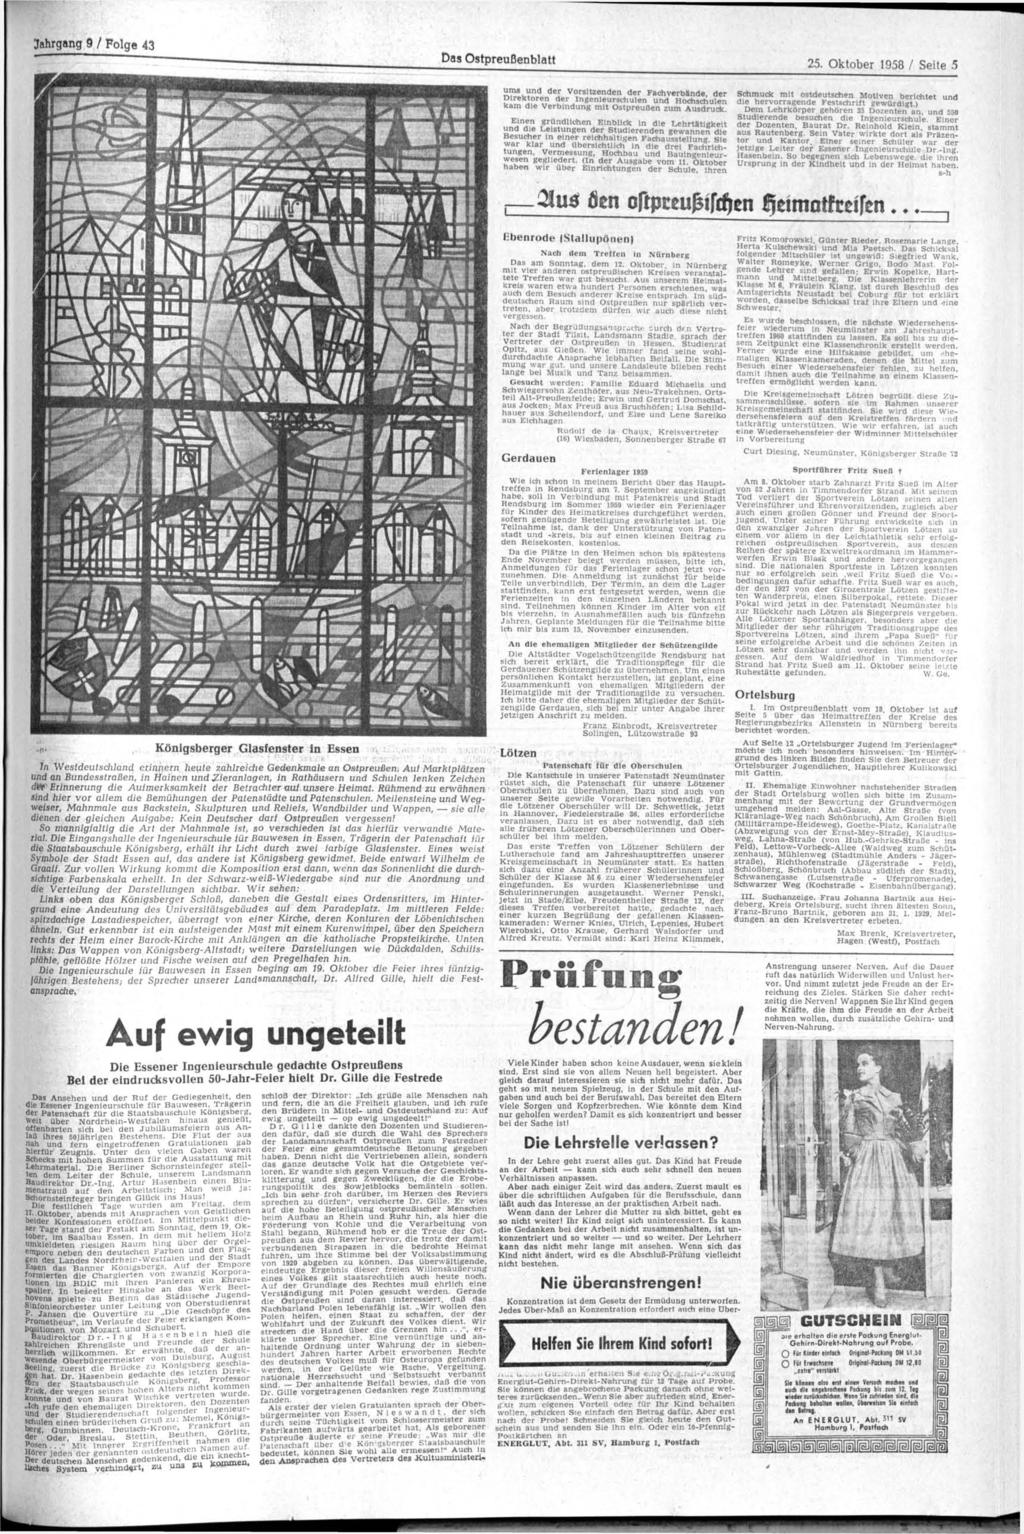 Das Ostpreußenblatt Oktober 1958 / Seite 5 AU cr*t«r der vielen Gratulanten sprach der Oberbürgermeister von Essen, N i e s w a n d t.